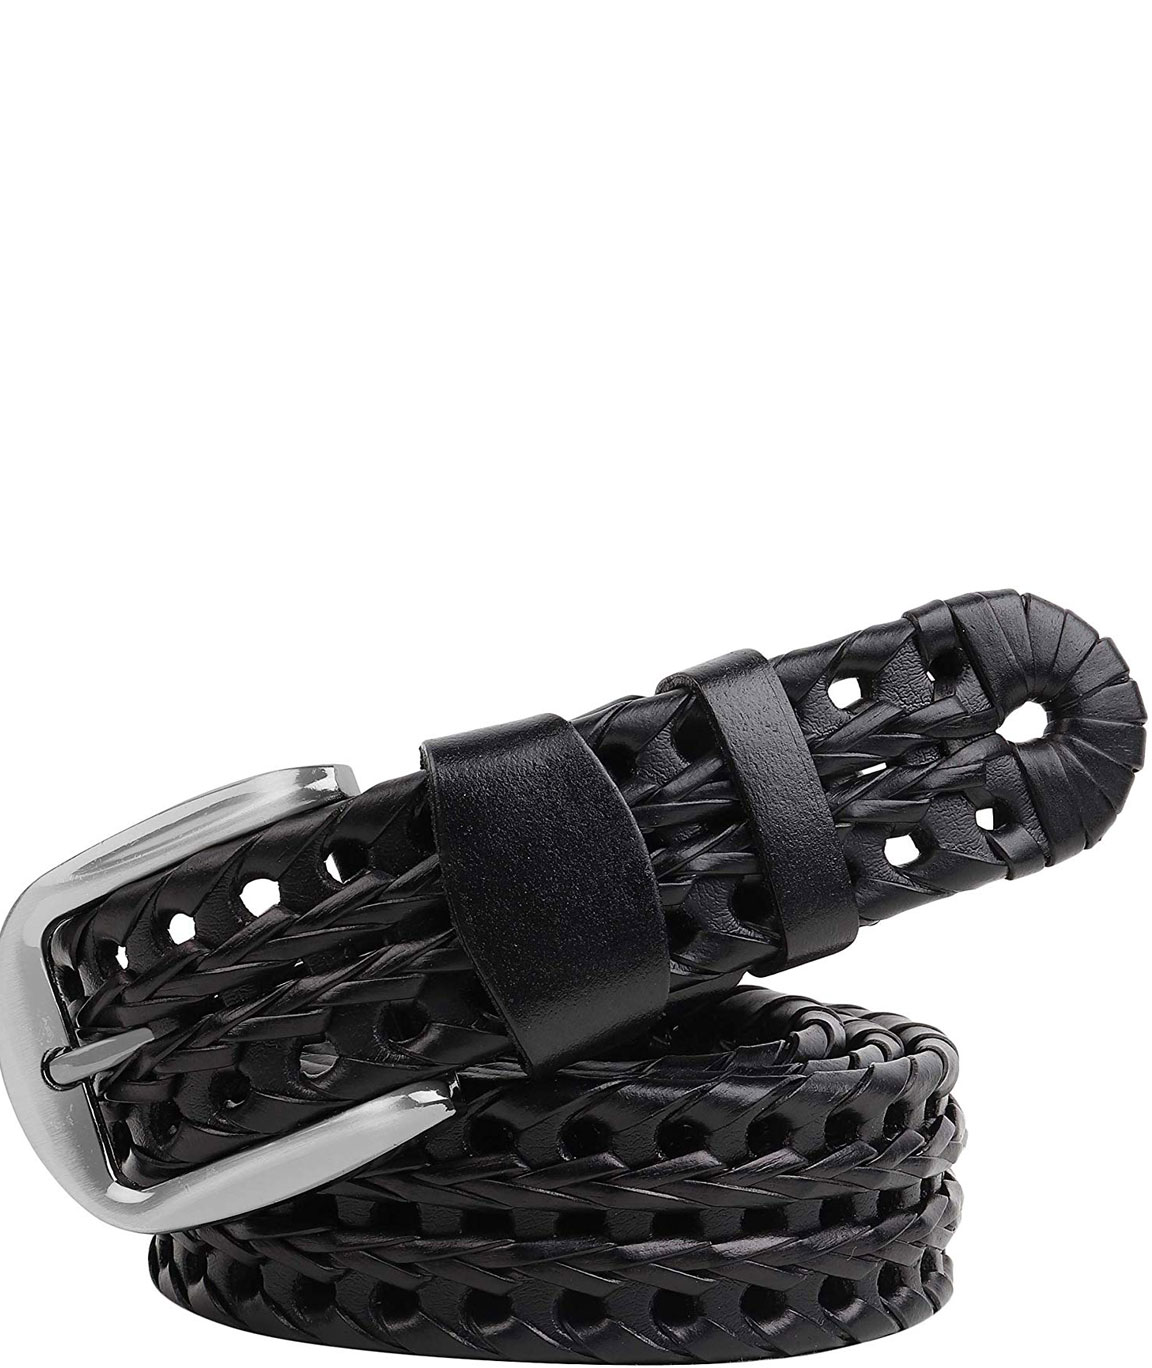 ZORO belt for men stylish, belts for men and women, belts for men leather branded, gift for men, gents belt